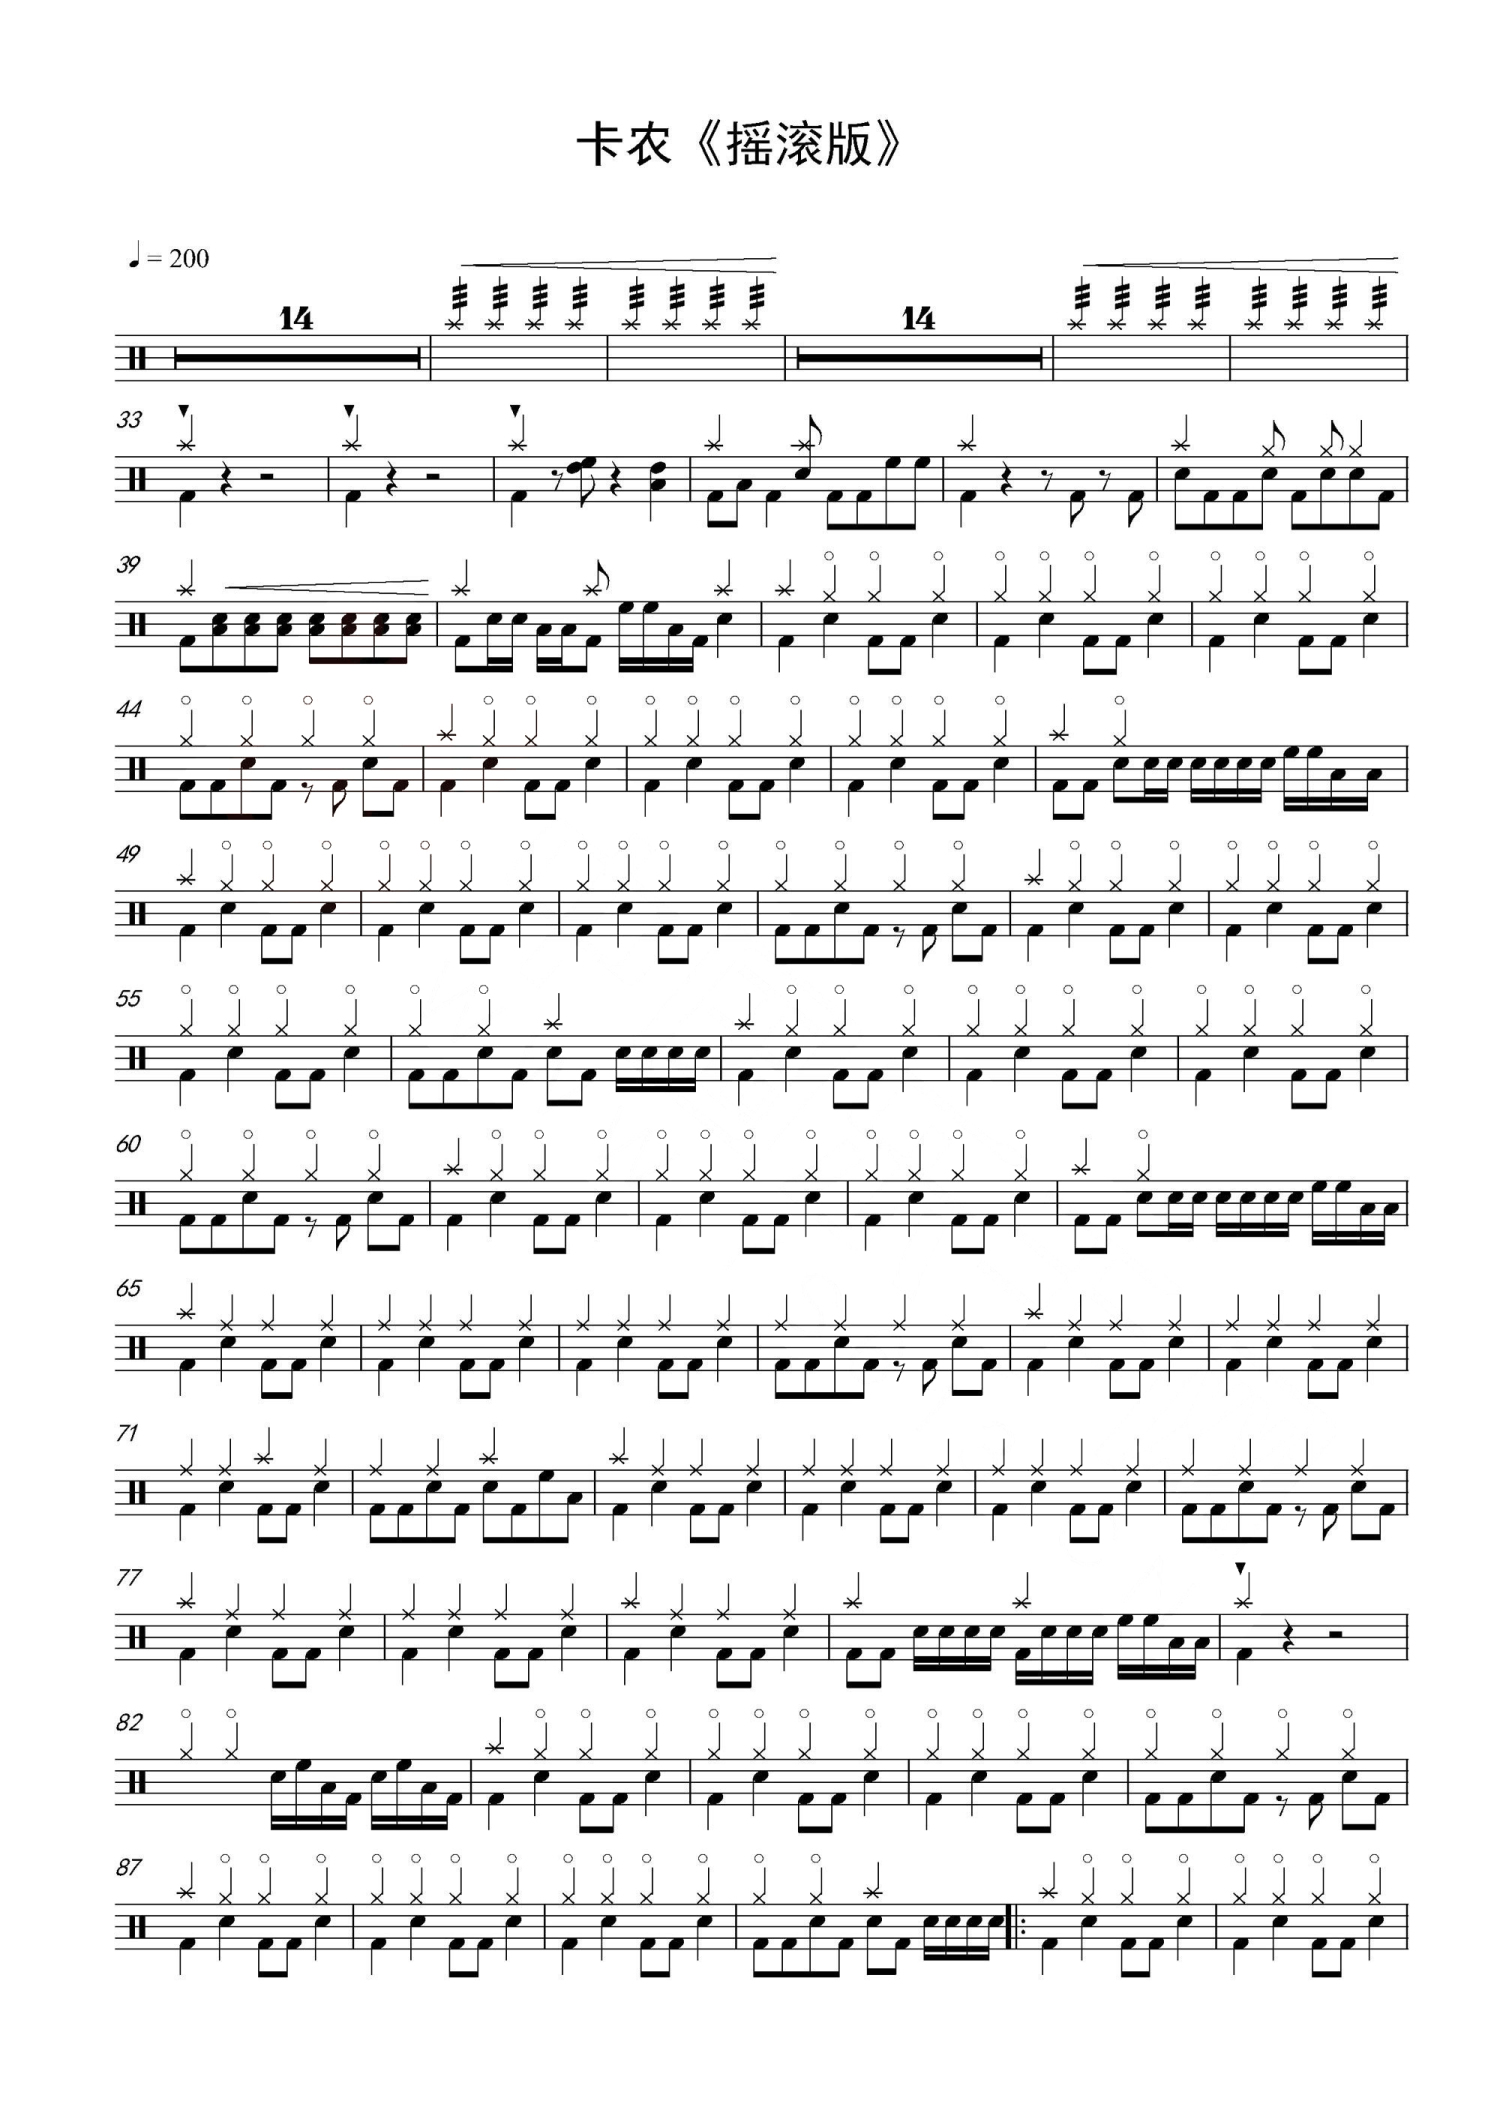 卡农(摇滚版) 架子鼓爵士鼓谱 附架子鼓伴奏曲,4/4拍节奏,每分钟200拍